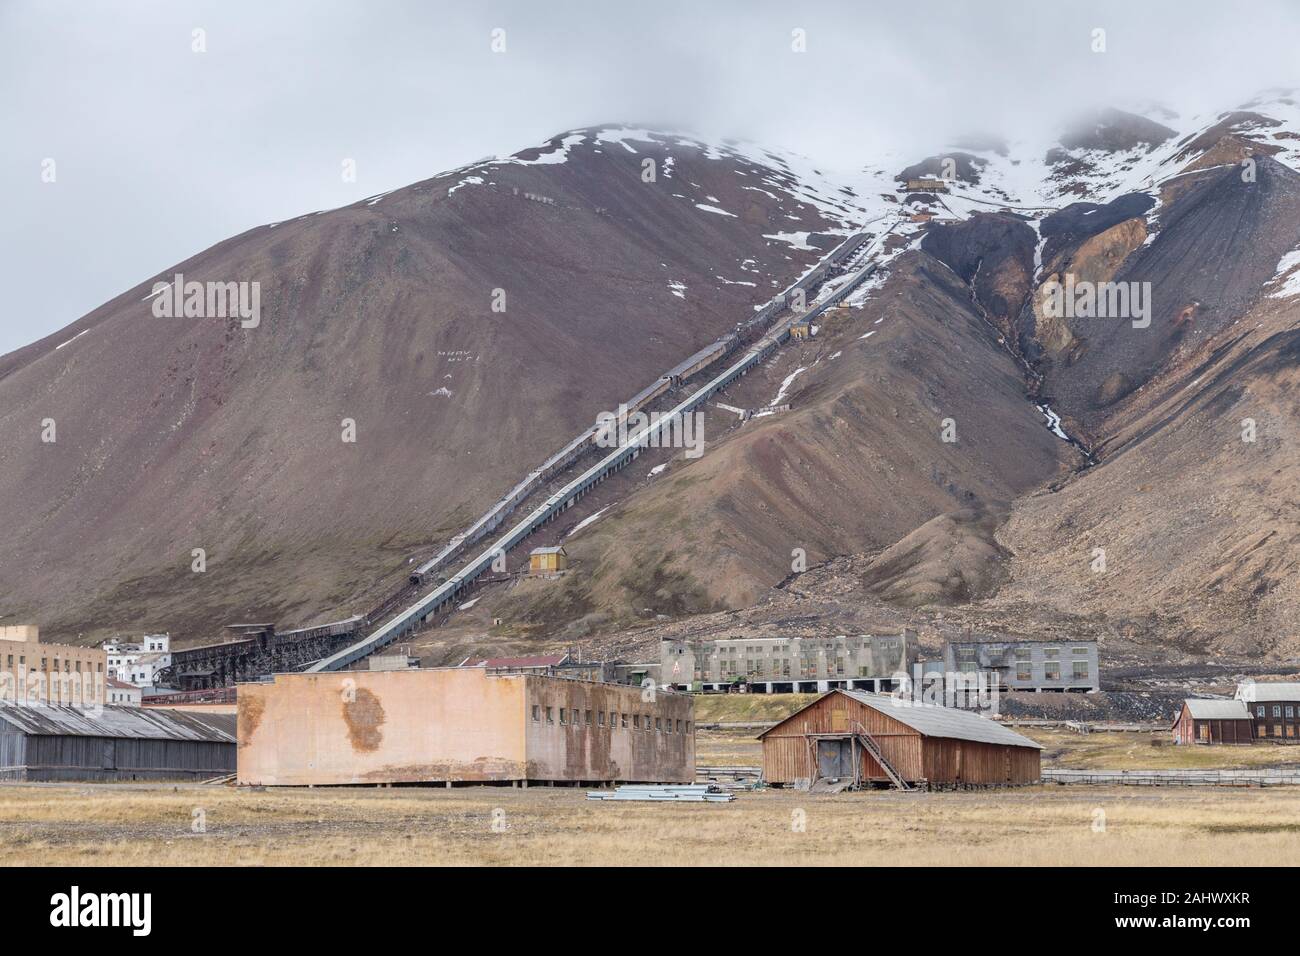 Des galeries de mines désaffectées à Pyramiden, une fédération de l'extraction du charbon sur le règlement sur le Spitzberg, archipel norvégien de Svalbard dans l'Arctique Banque D'Images